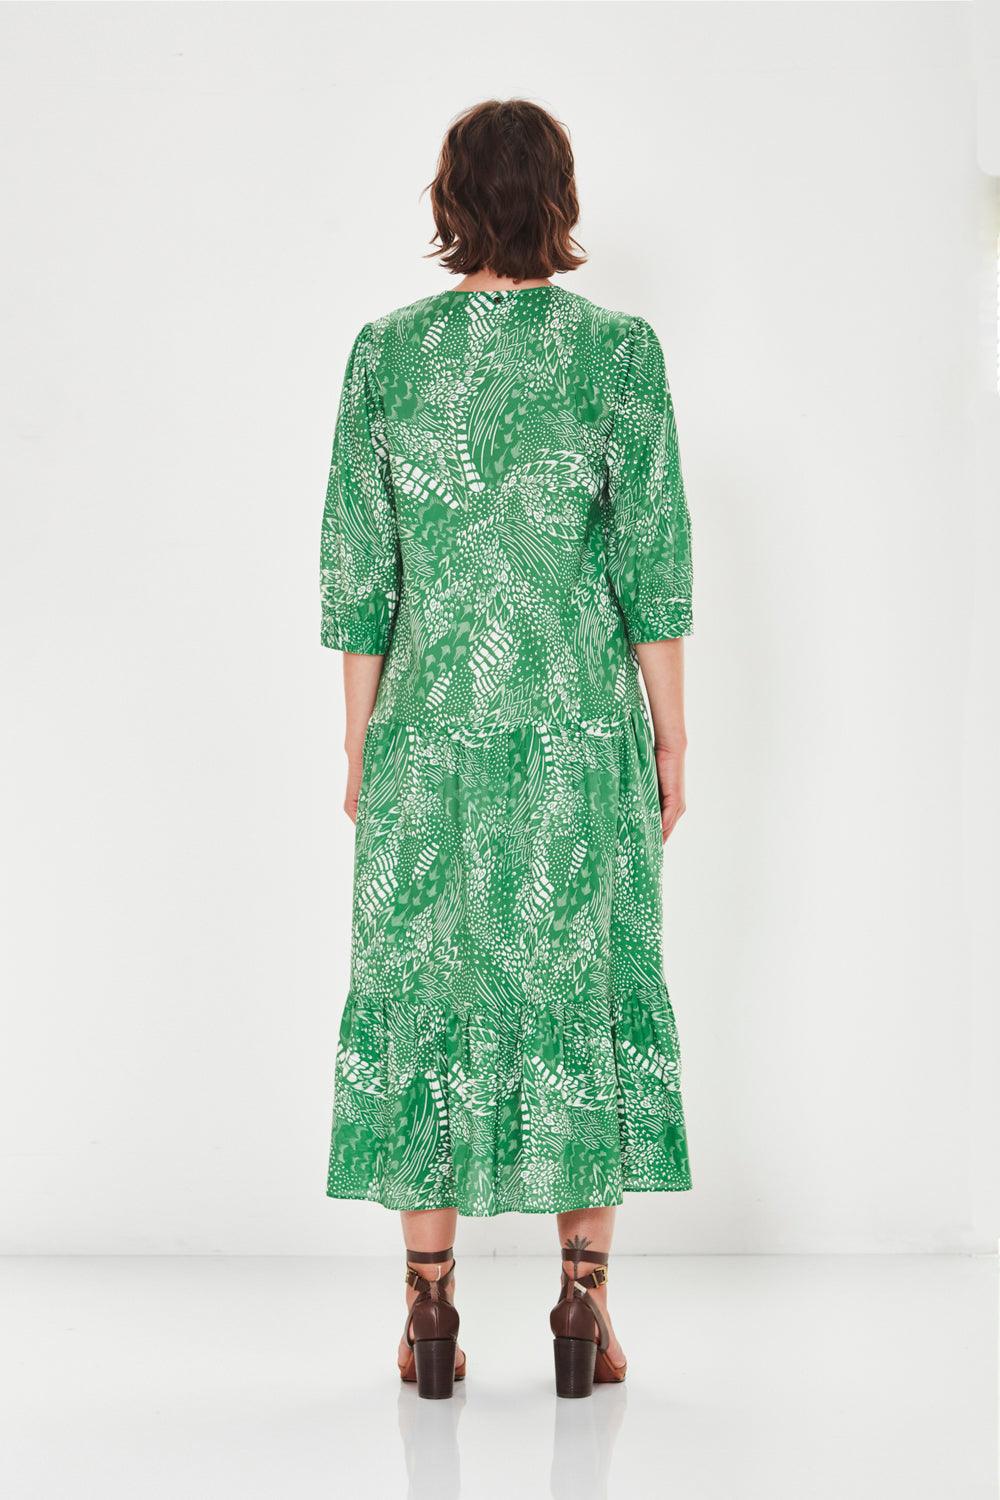 Spirit Dress - Grass - Dress VERGE